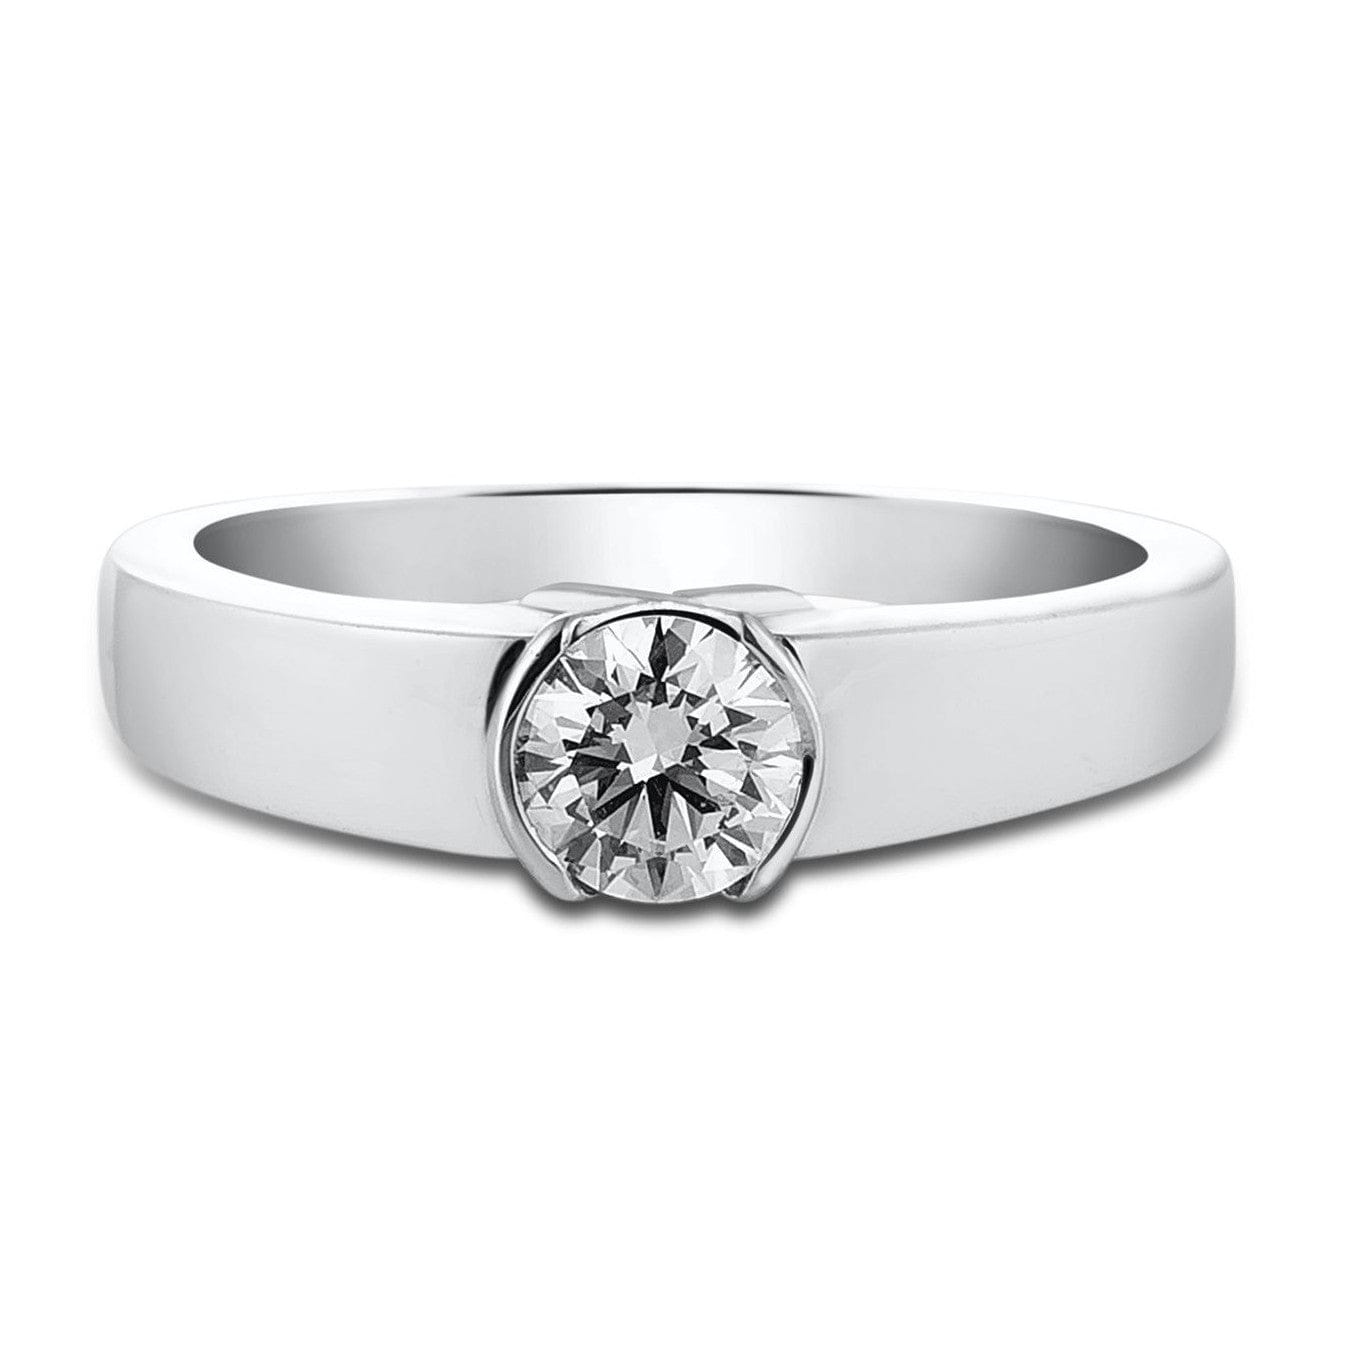 Buy Textured Men's Diamond Ring Online | ORRA